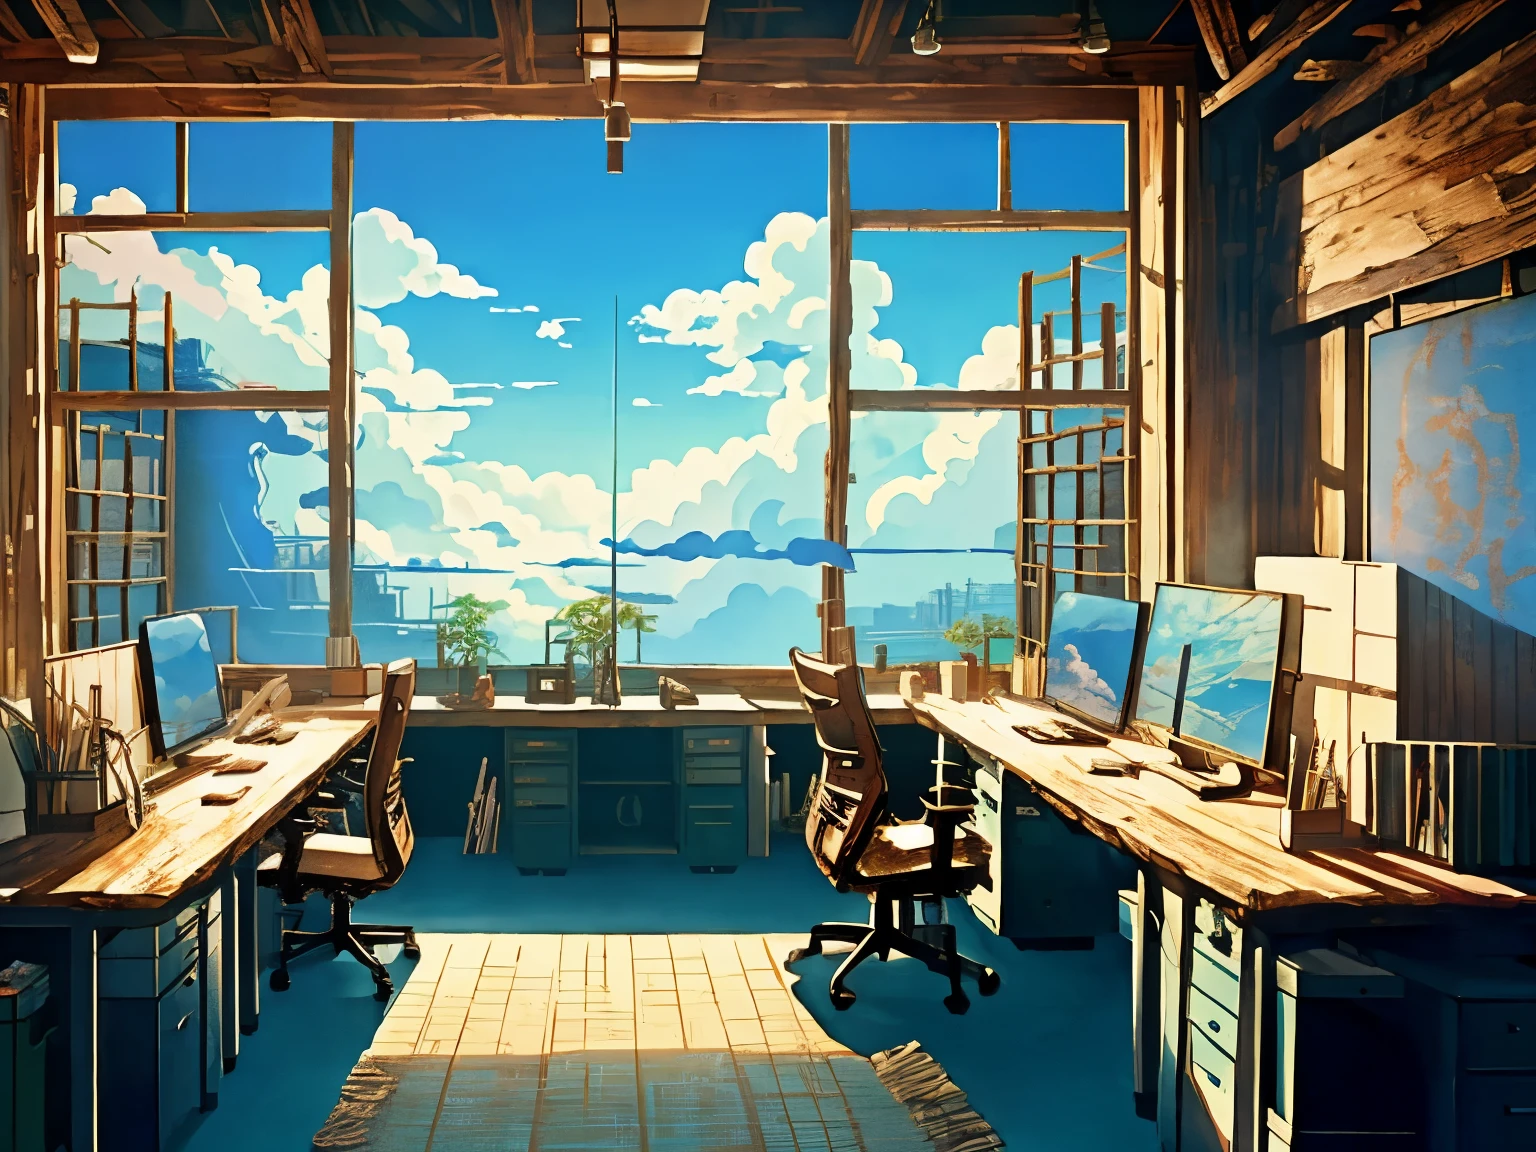 Captura de tela do DVD do filme do Studio Ghibli, (lindo interior de escritório rústico:1.4), Nuvens no céu azul, desenhado por Hayao Miyazaki, retro anime